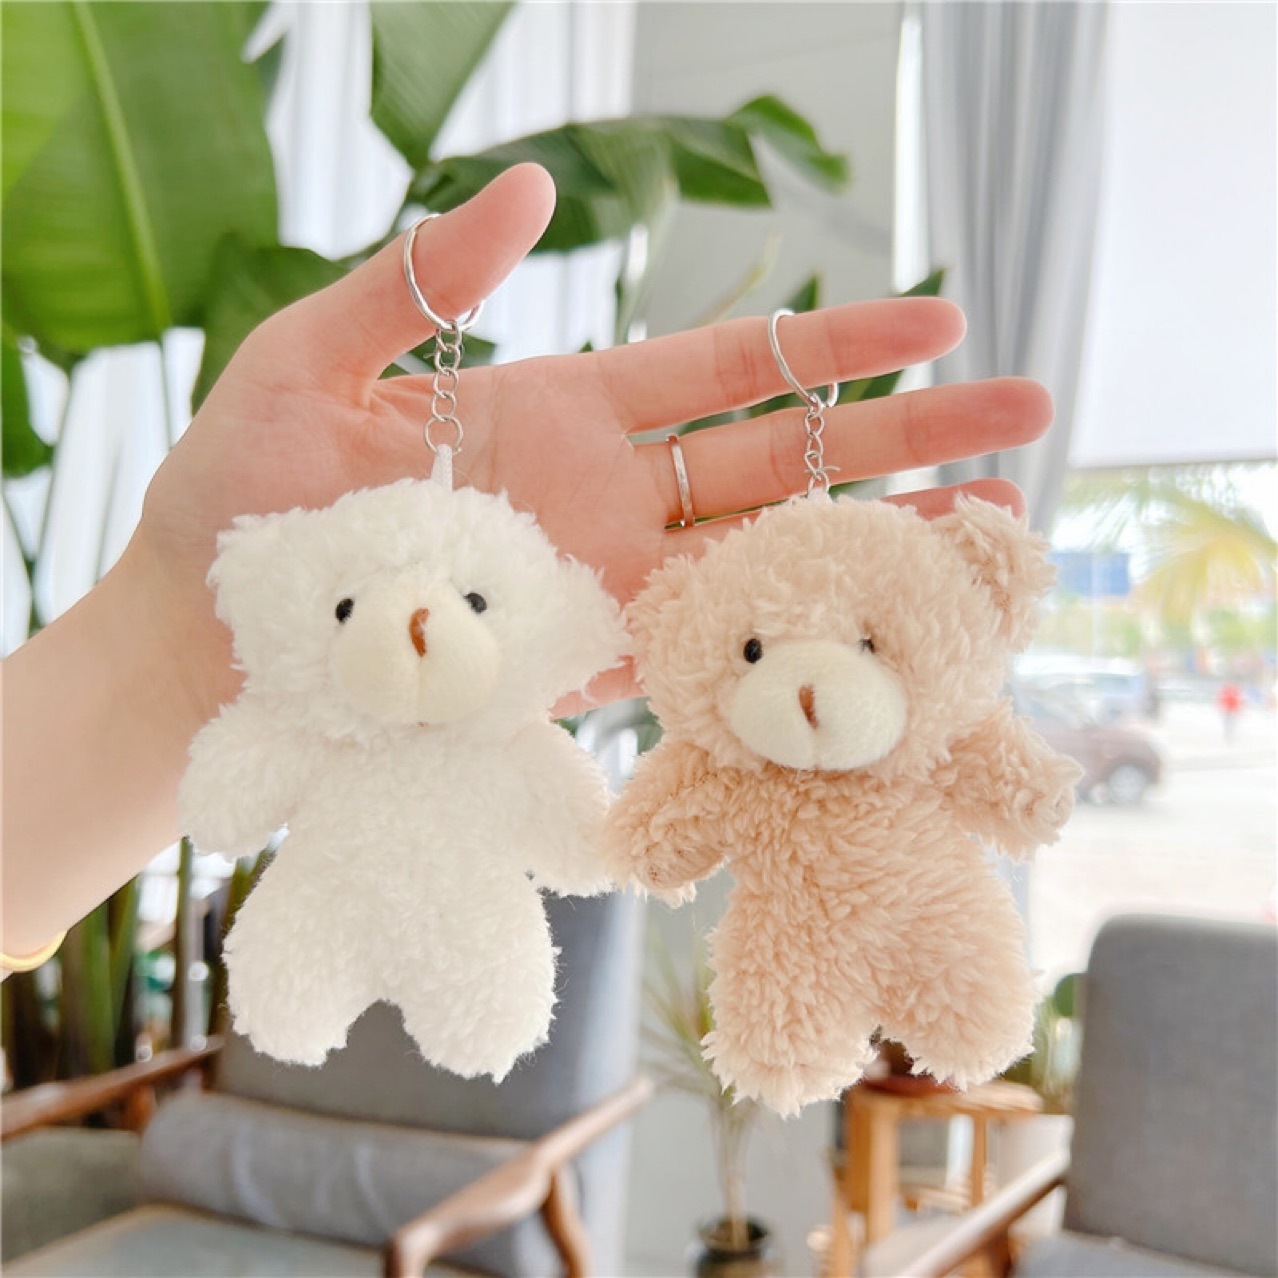 Móc khoá gấu bông cute dễ thương giá rẻ đẹp treo balo túi xách làm quà tặng